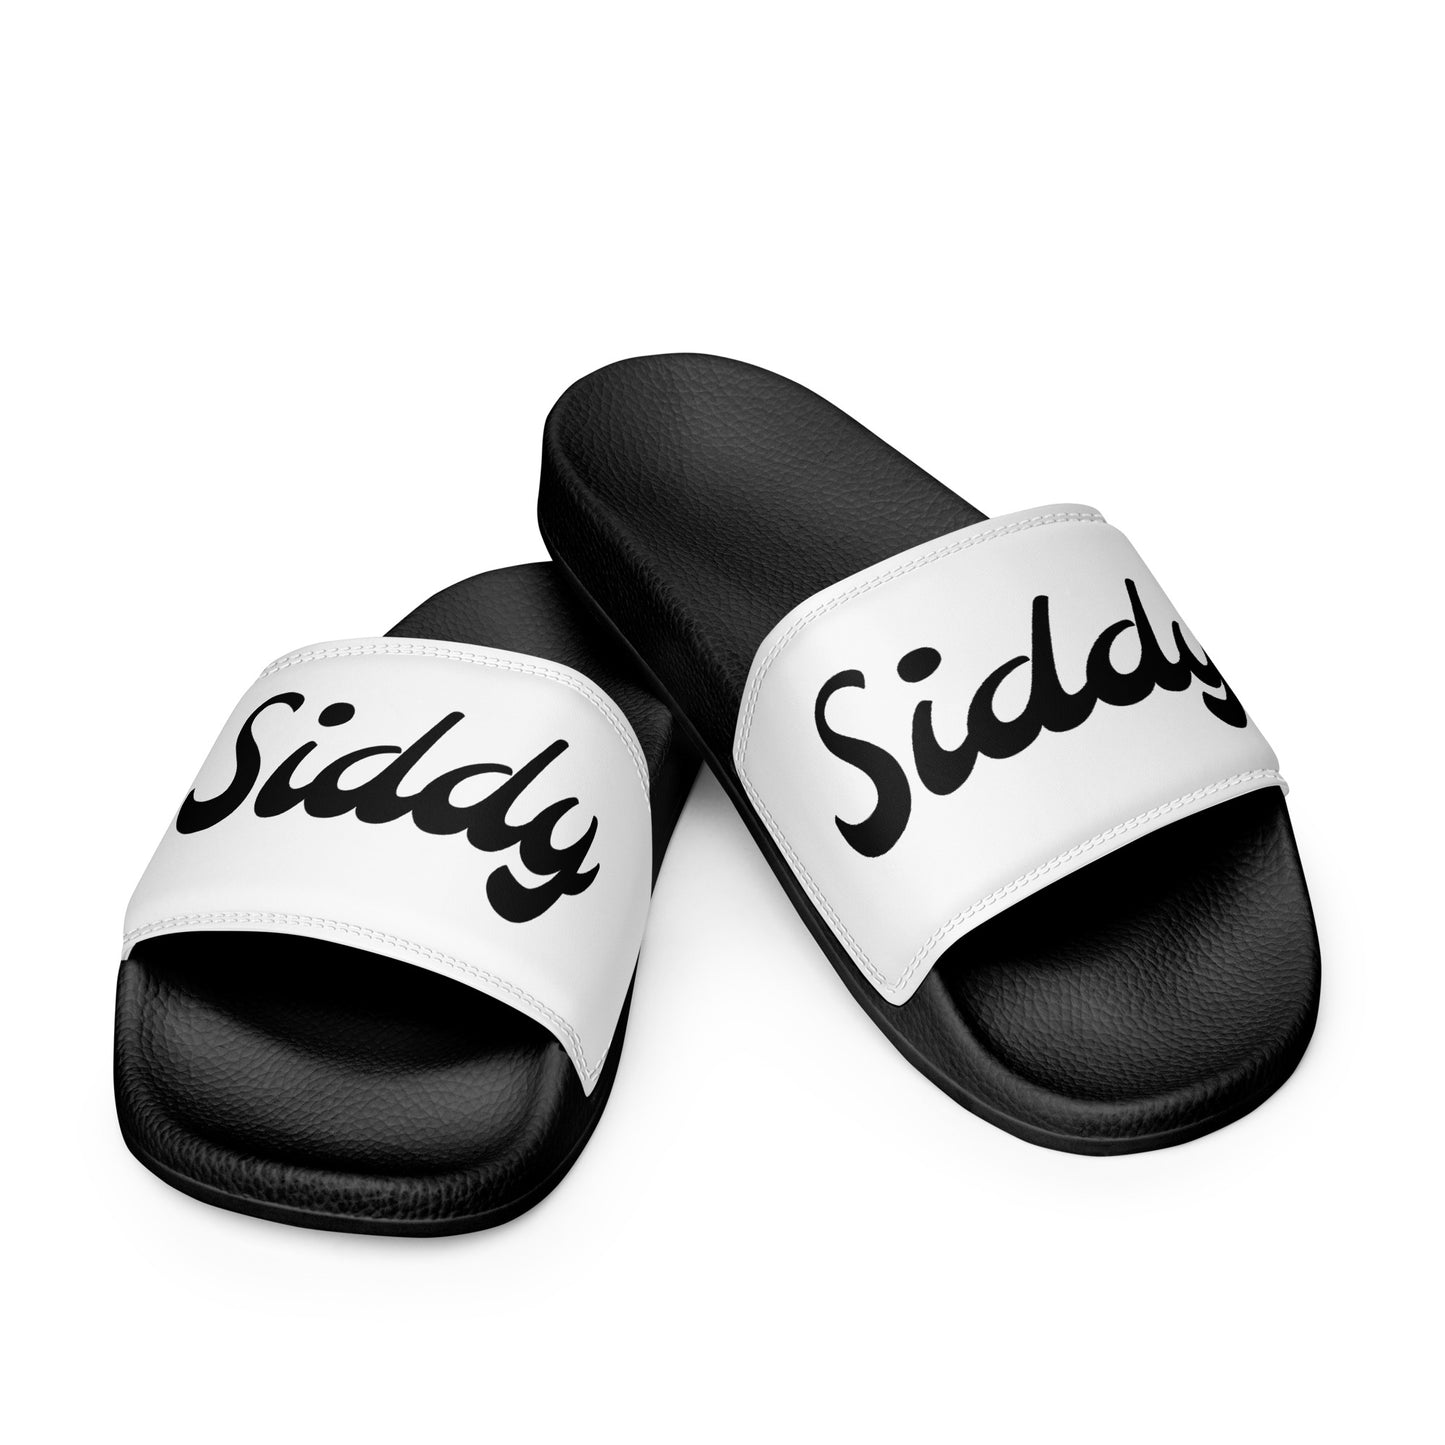 Siddy Men’s slides